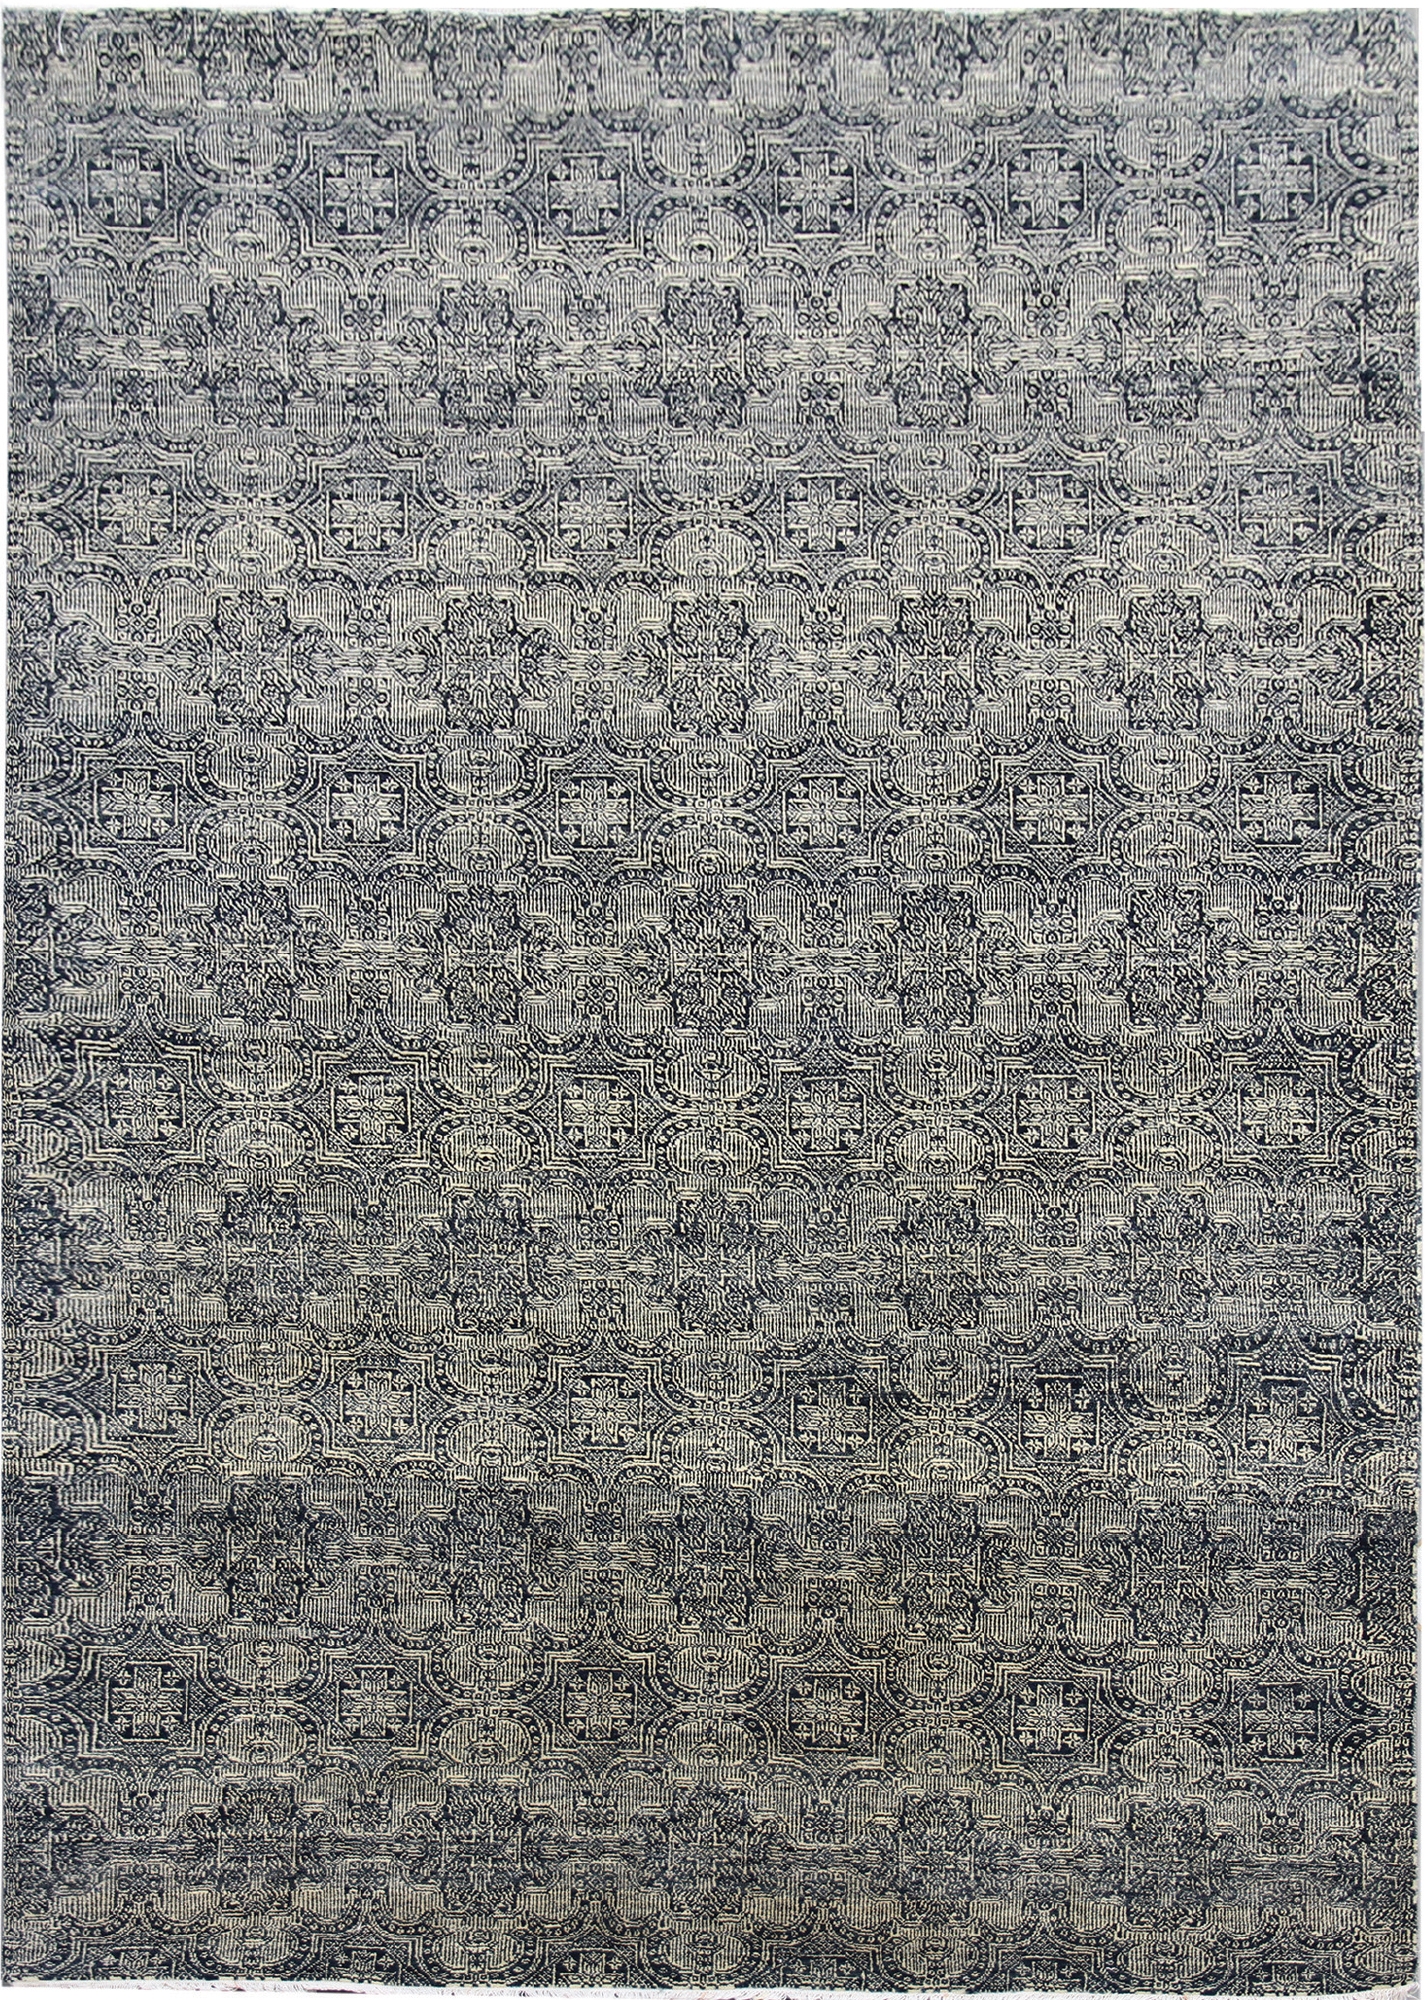 Ručne viazaný kusový koberec Diamond DC-JK 1 SILVER / BLACK - 365x550 cm Diamond Carpets koberce 